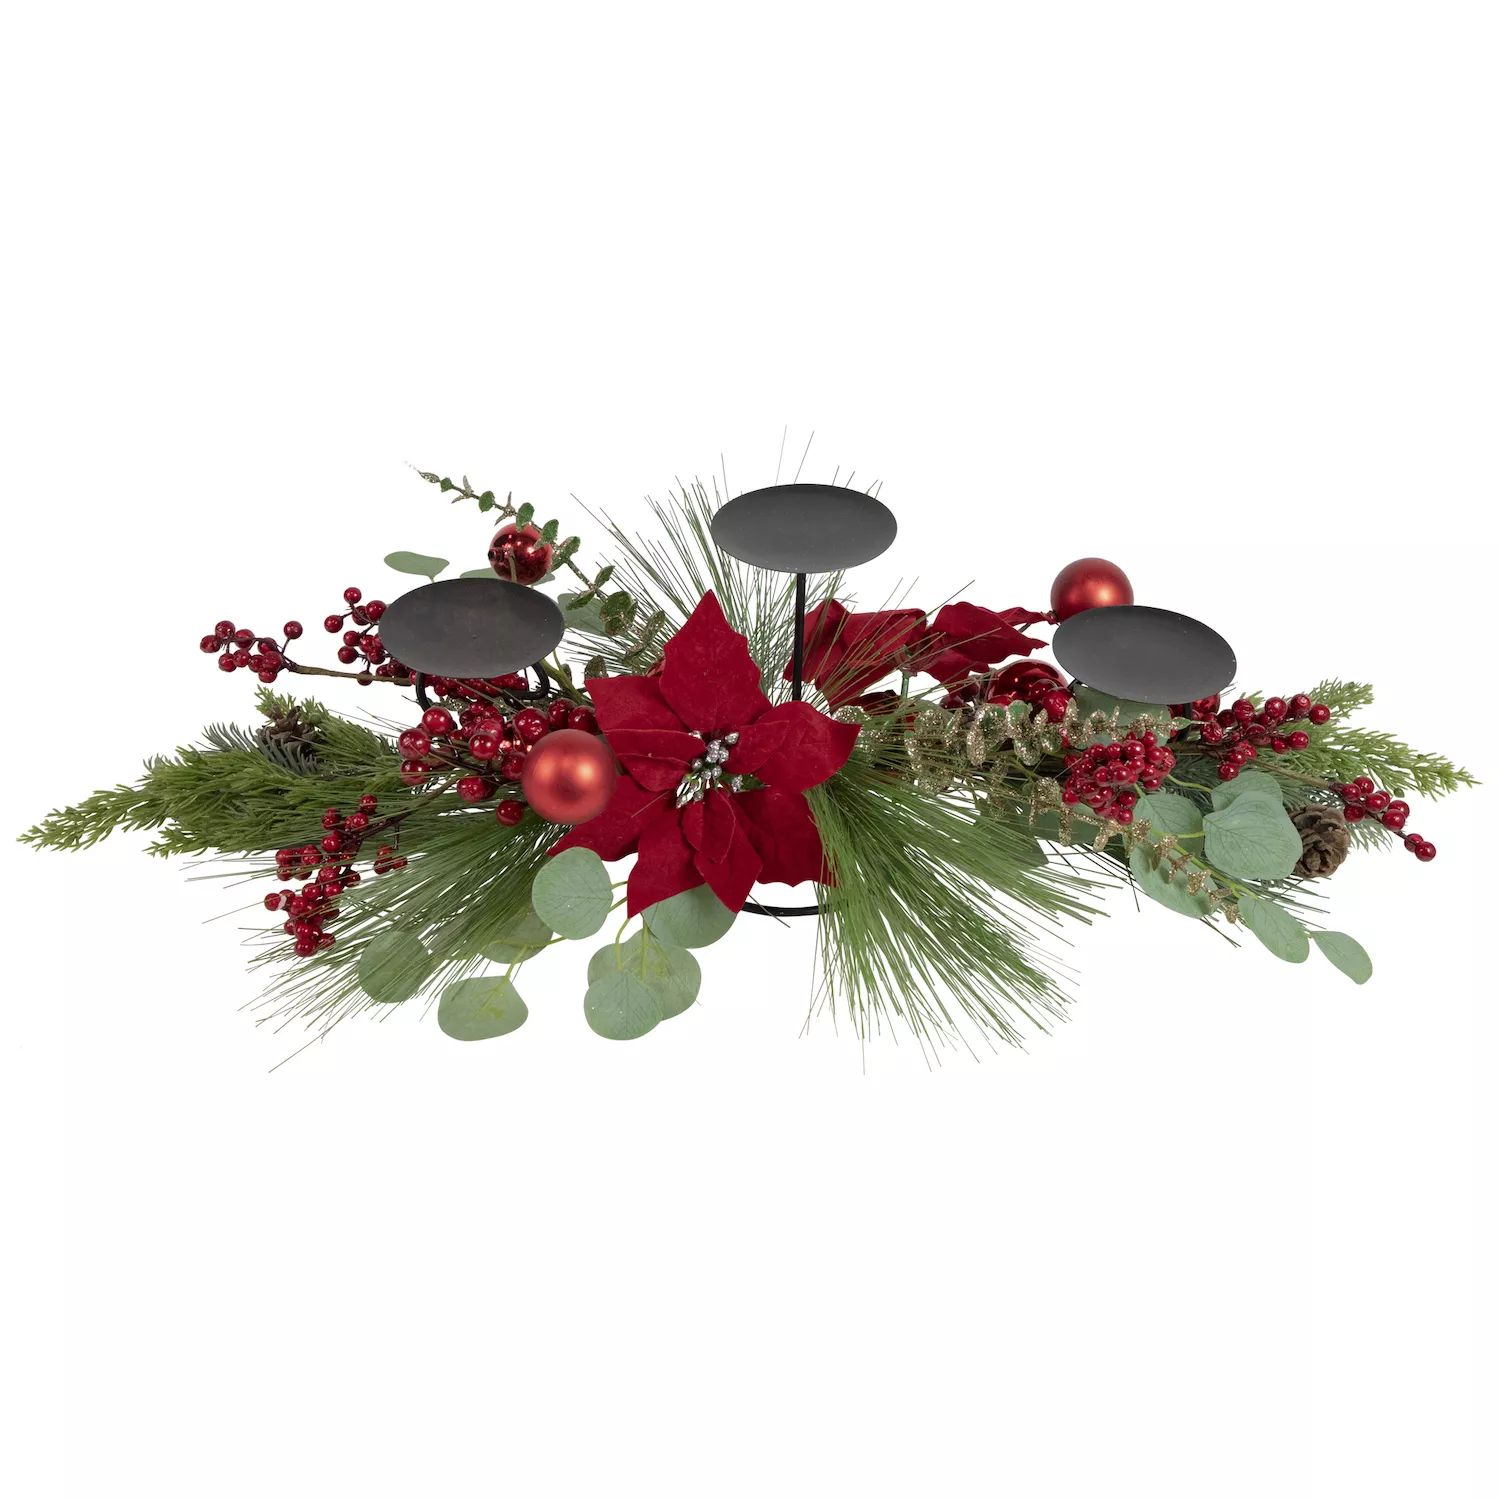 Тройной подсвечник 32 дюйма с рождественским декором из красных ягод и пуансеттии